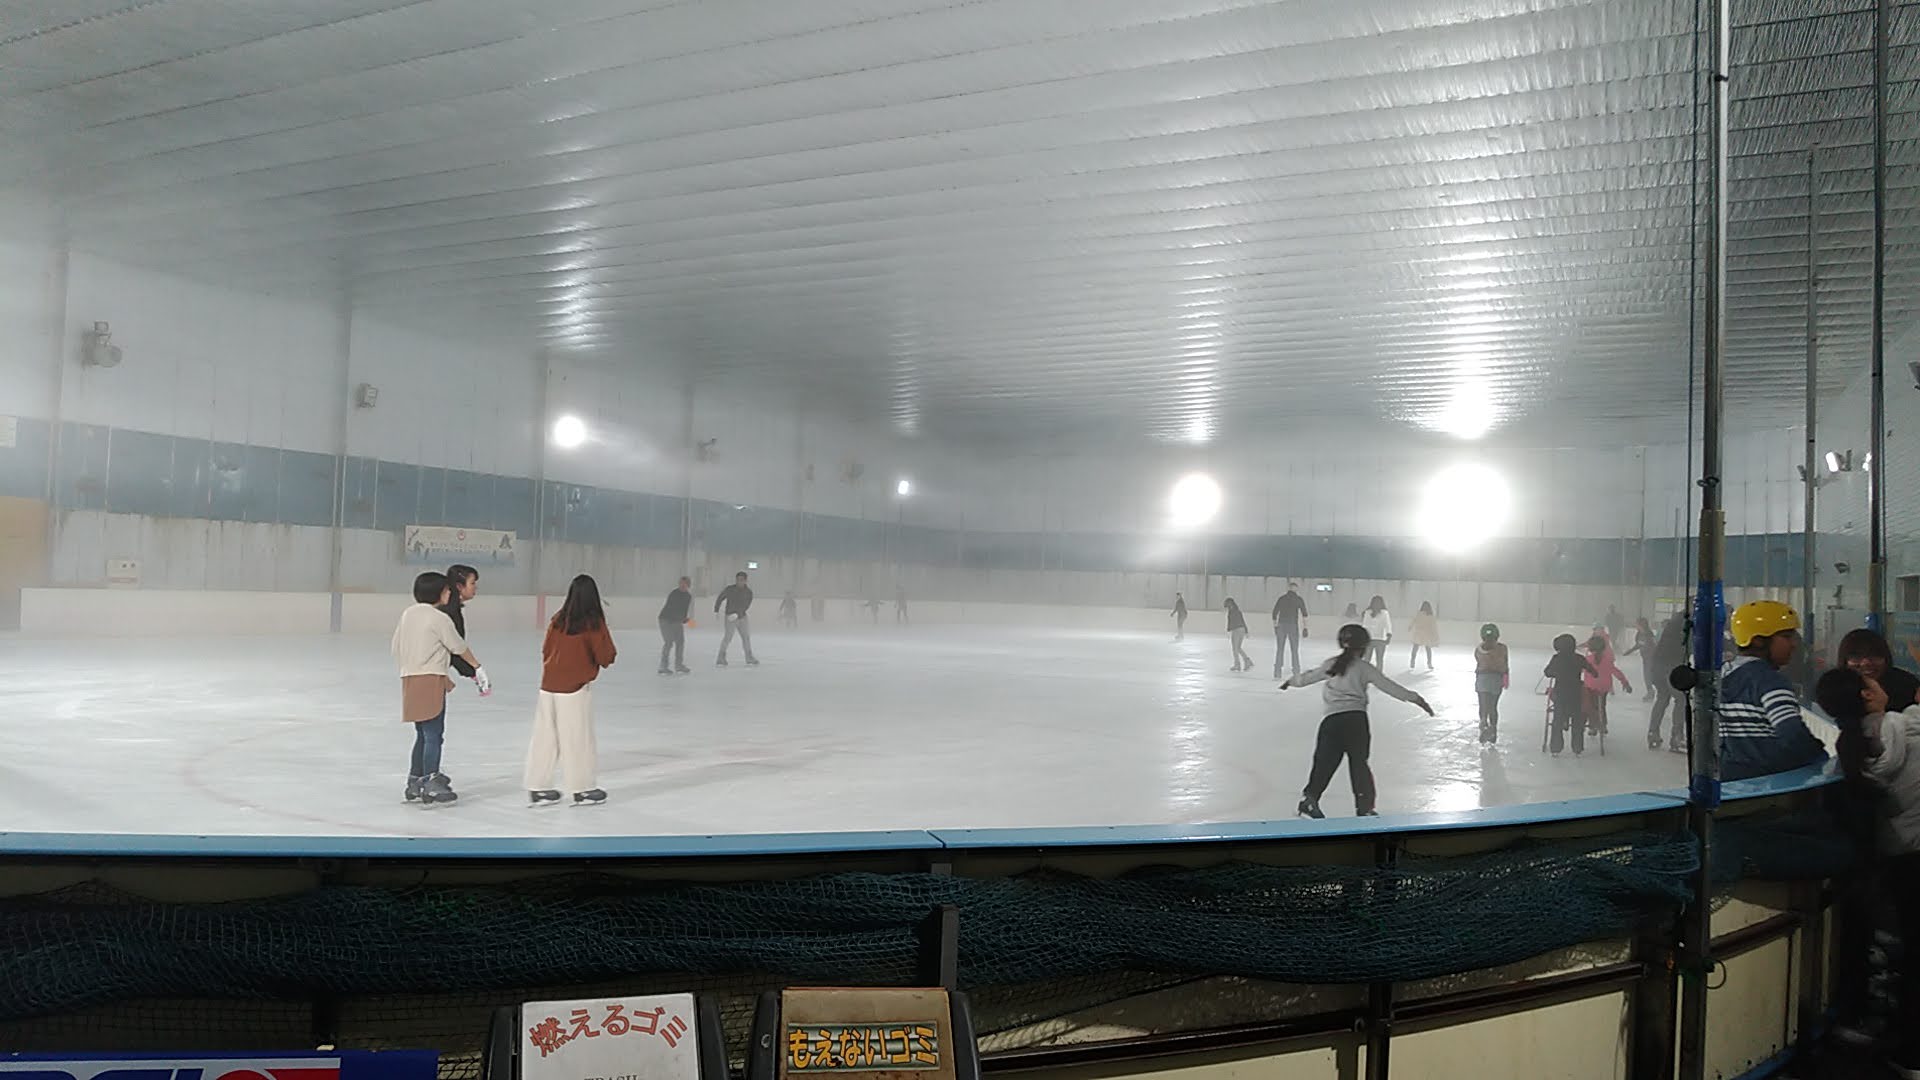 アイススケート場内の様子